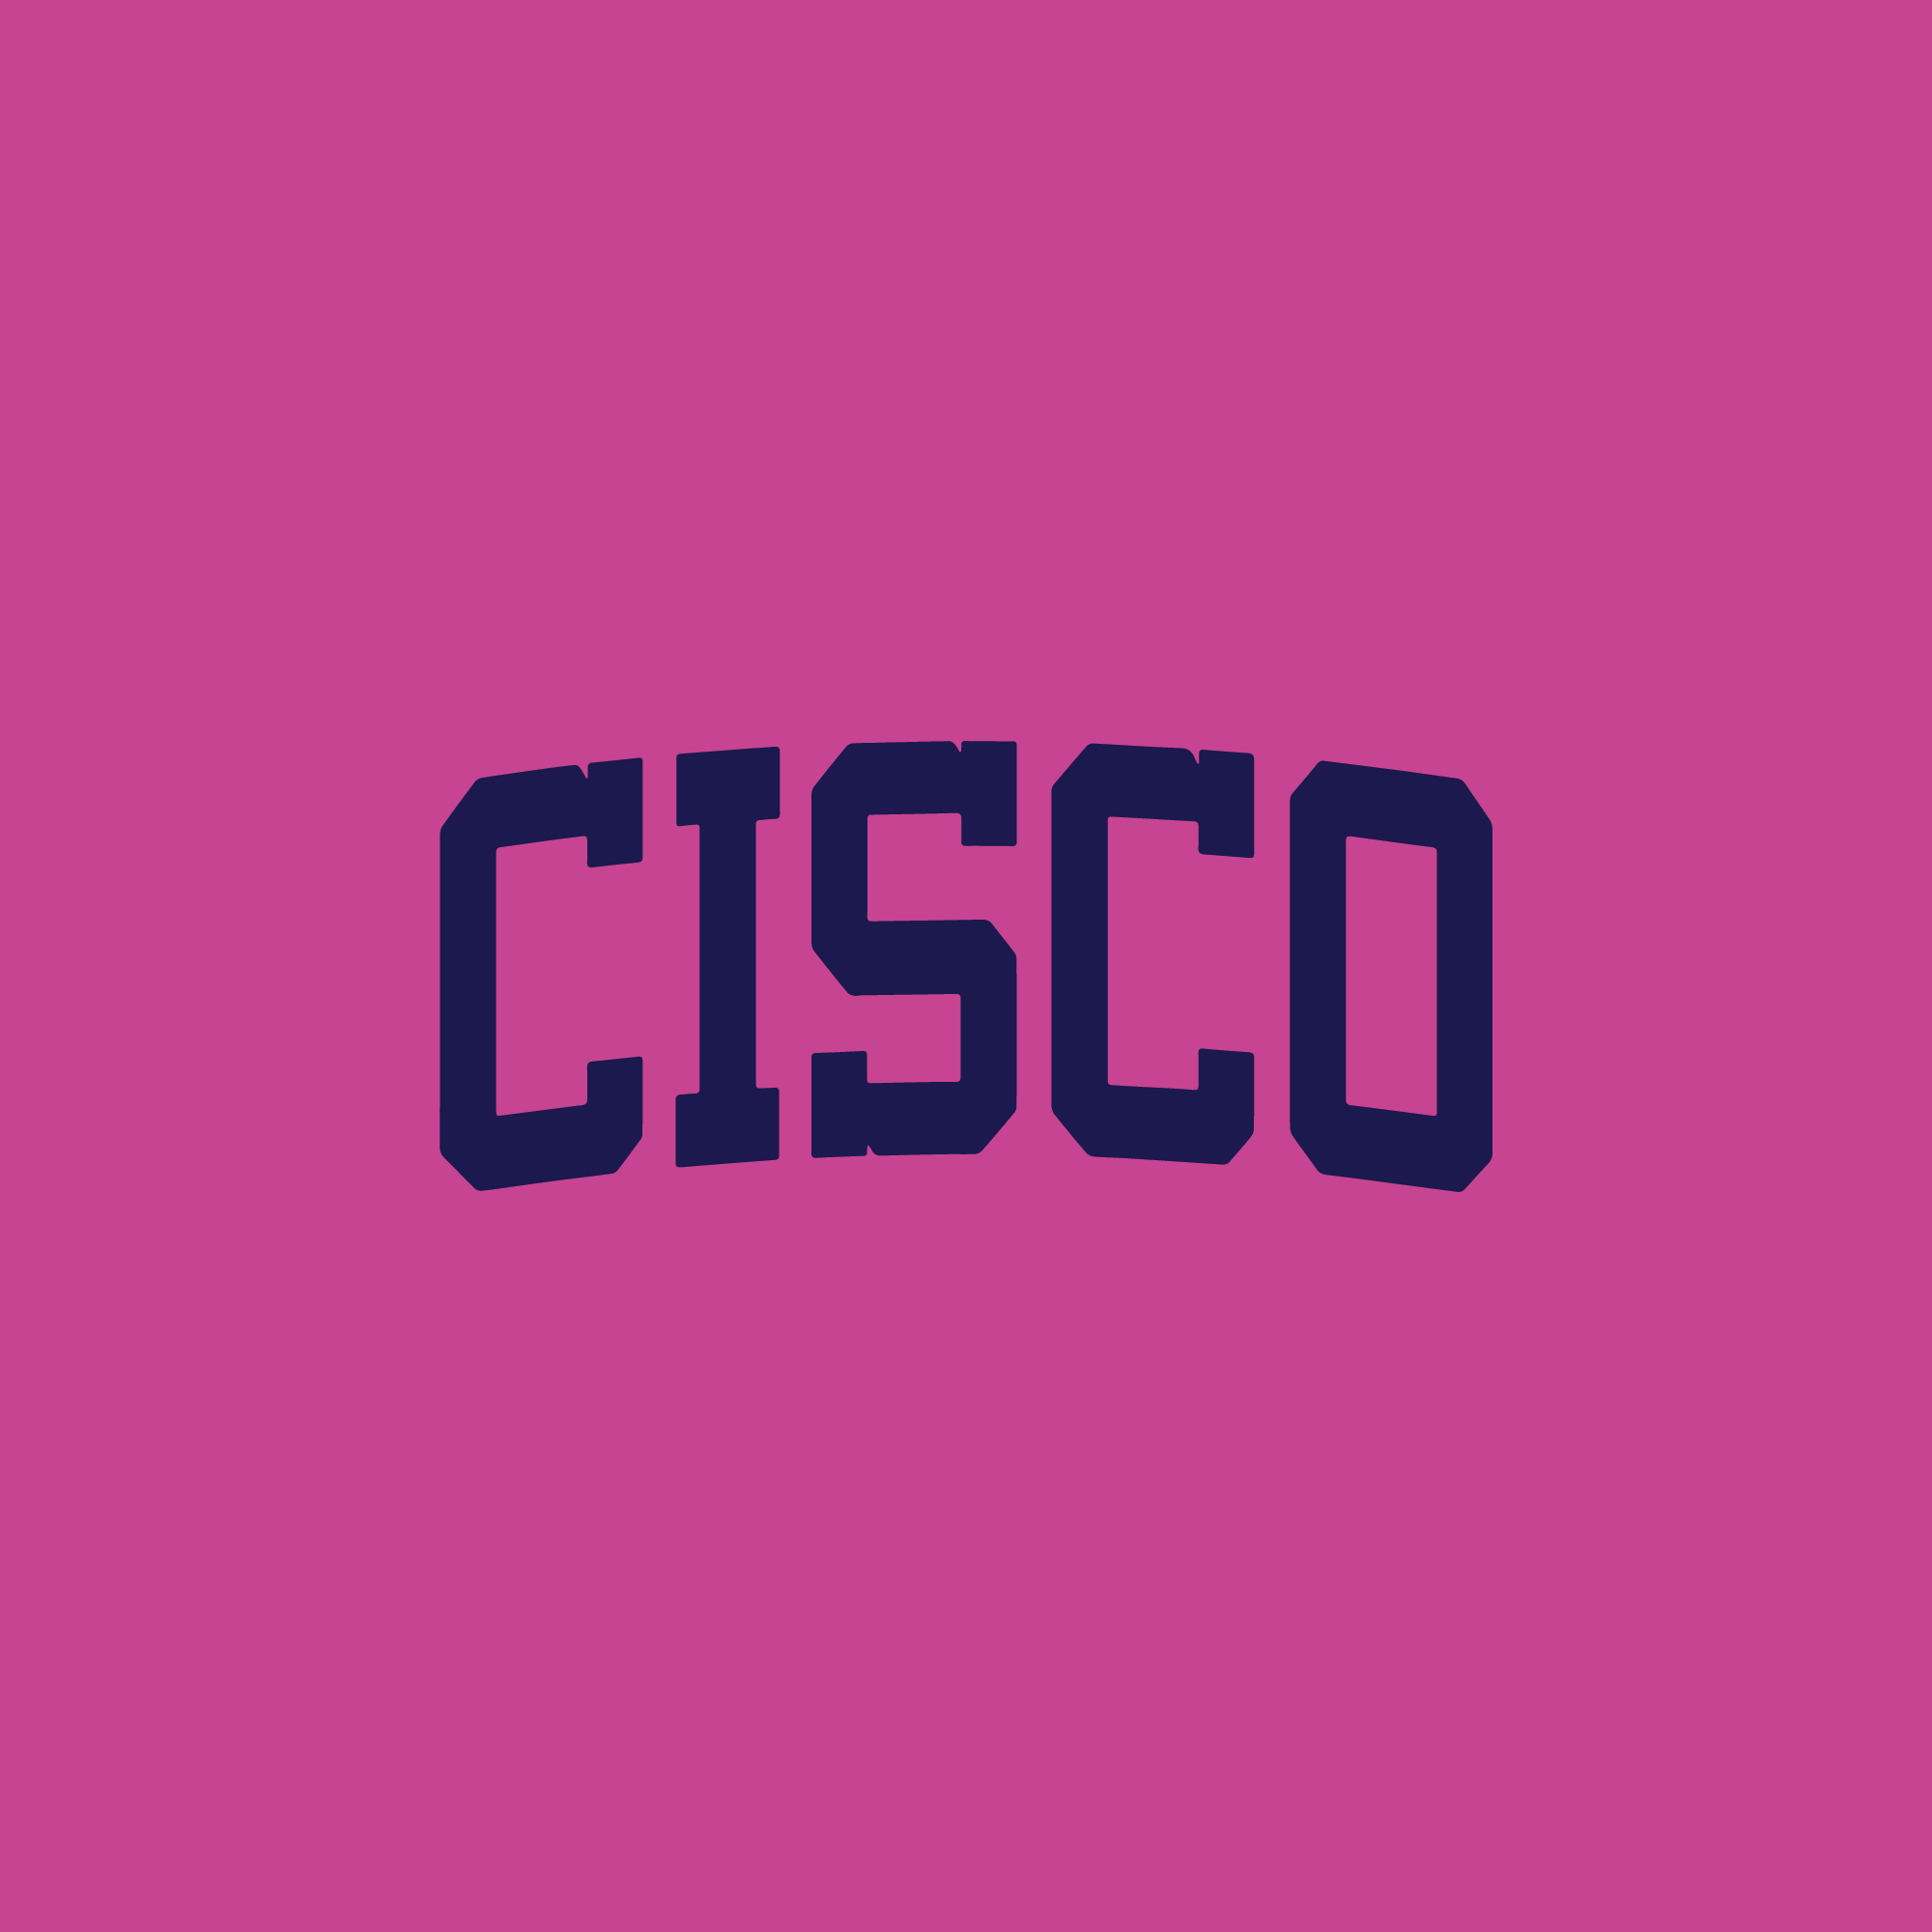 Cisco Short Sleeve T Shirt (Pink, Navy)